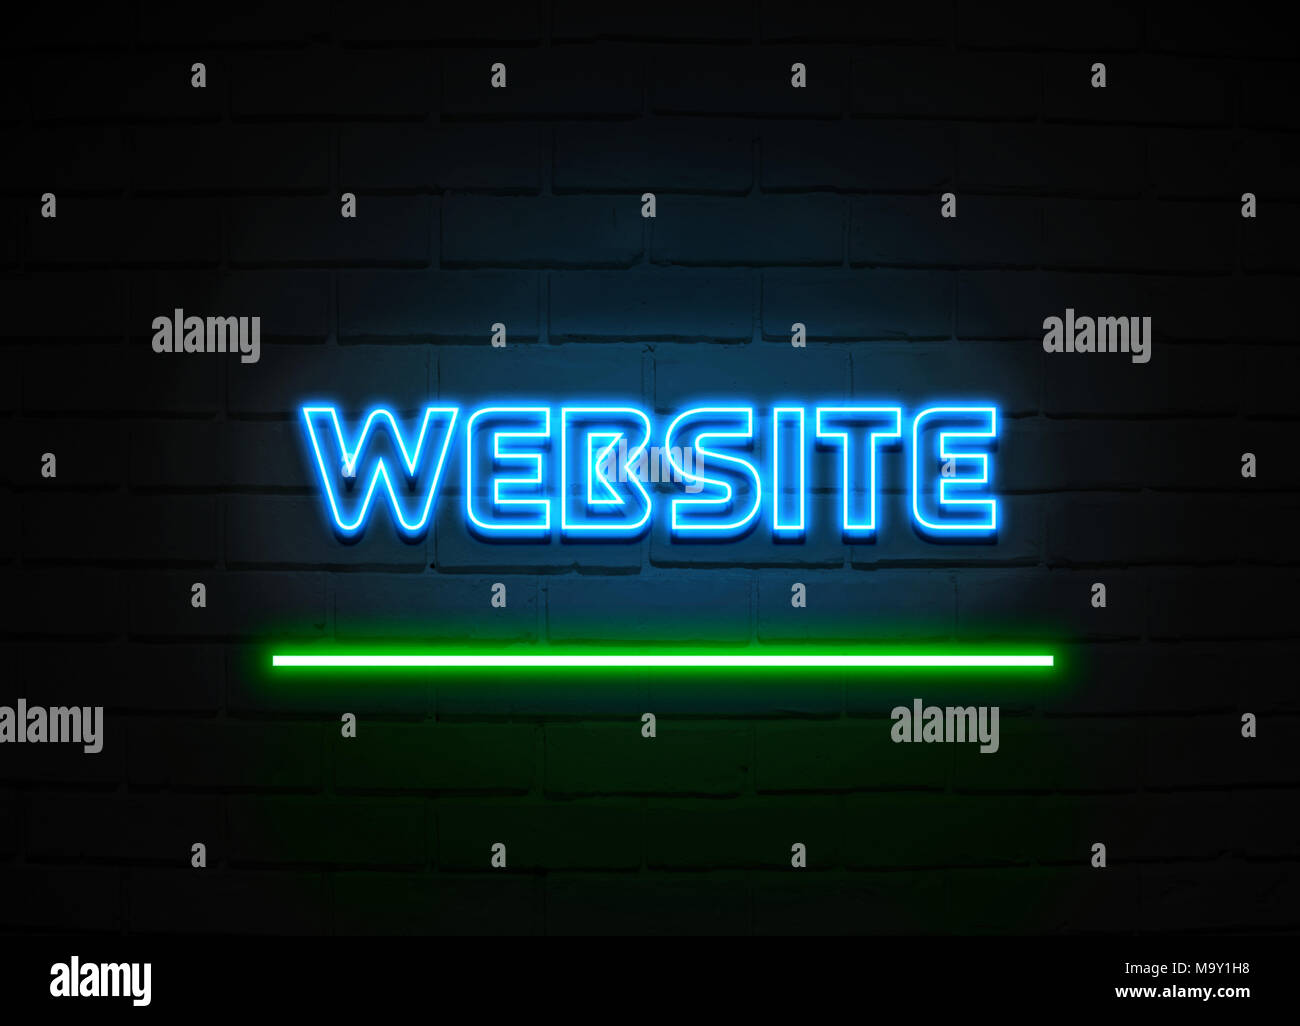 Die blauen und grünen Leuchtreklame auf Mauer, Nacht, Verkaufsförderung, Werbung, Stockfoto